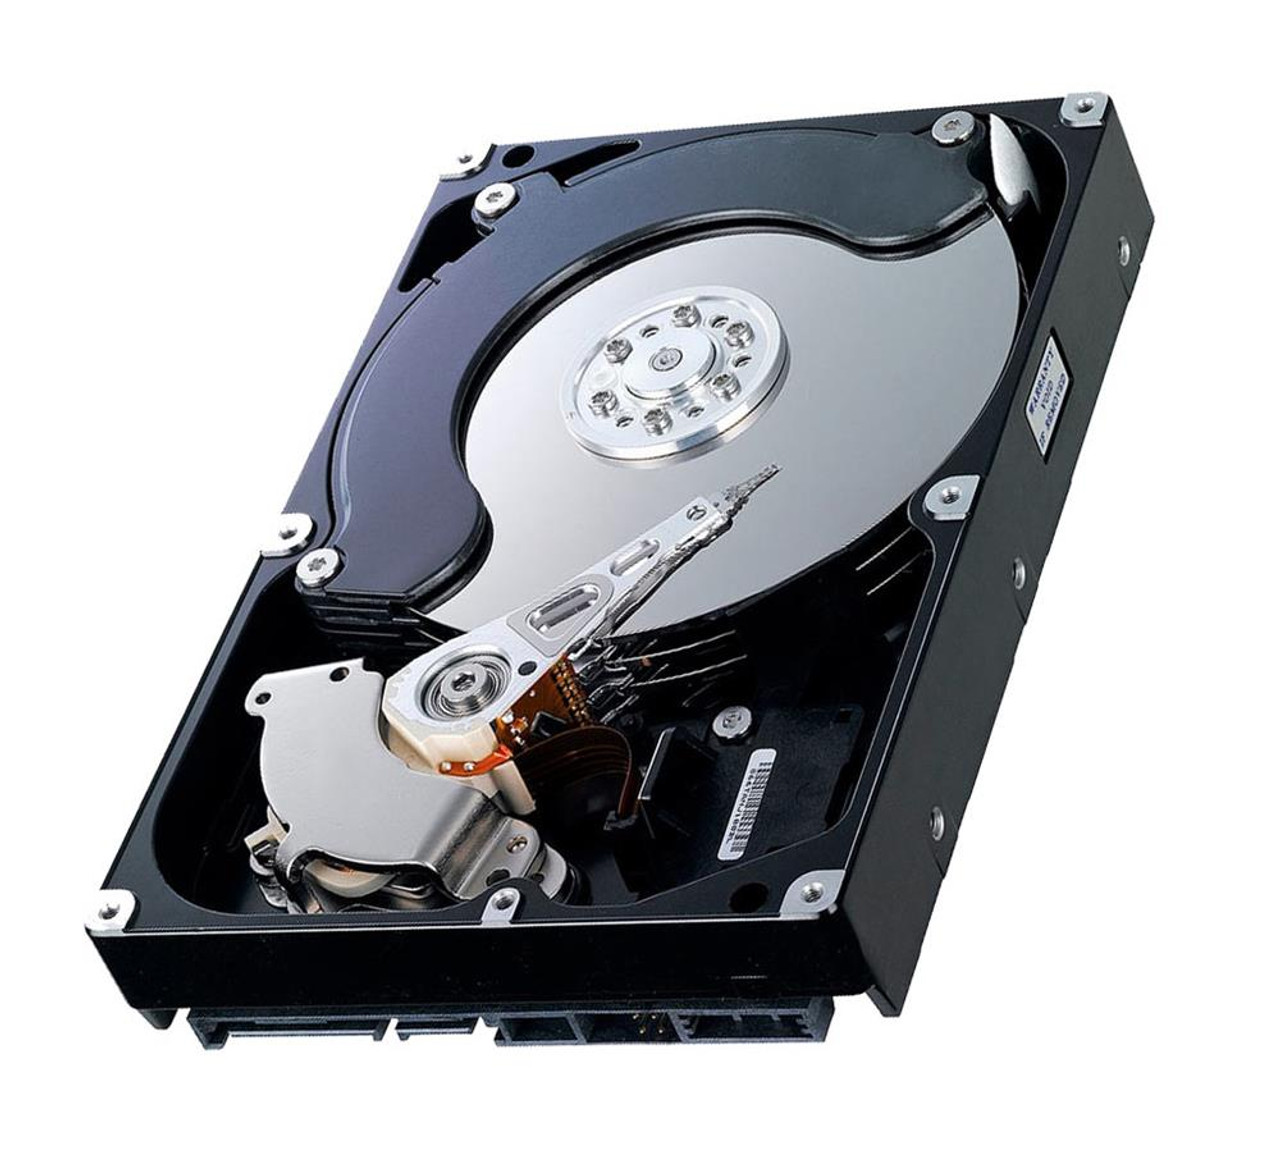 WD5001AALS06 - Western Digital Caviar Black 500GB 7200RPM SATA 3GB/s 32MB Cache 3.5-inch Hard Disk Drive